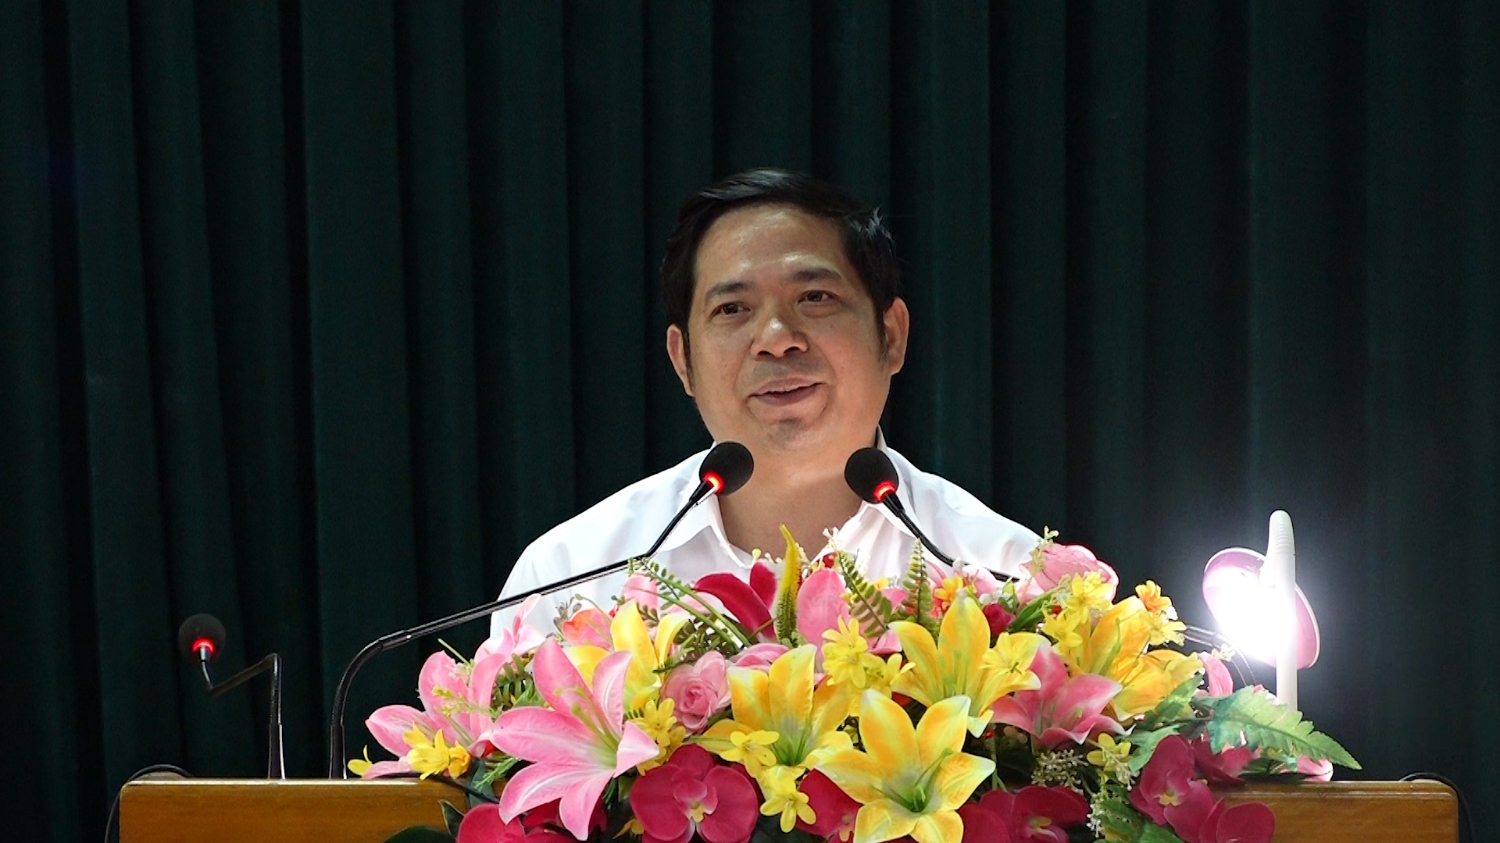 Đồng chí Nguyễn Văn Ninh – Thị Ủy viên, Phó chủ tịch UBND thị xã phát biểu kết luận hội nghị